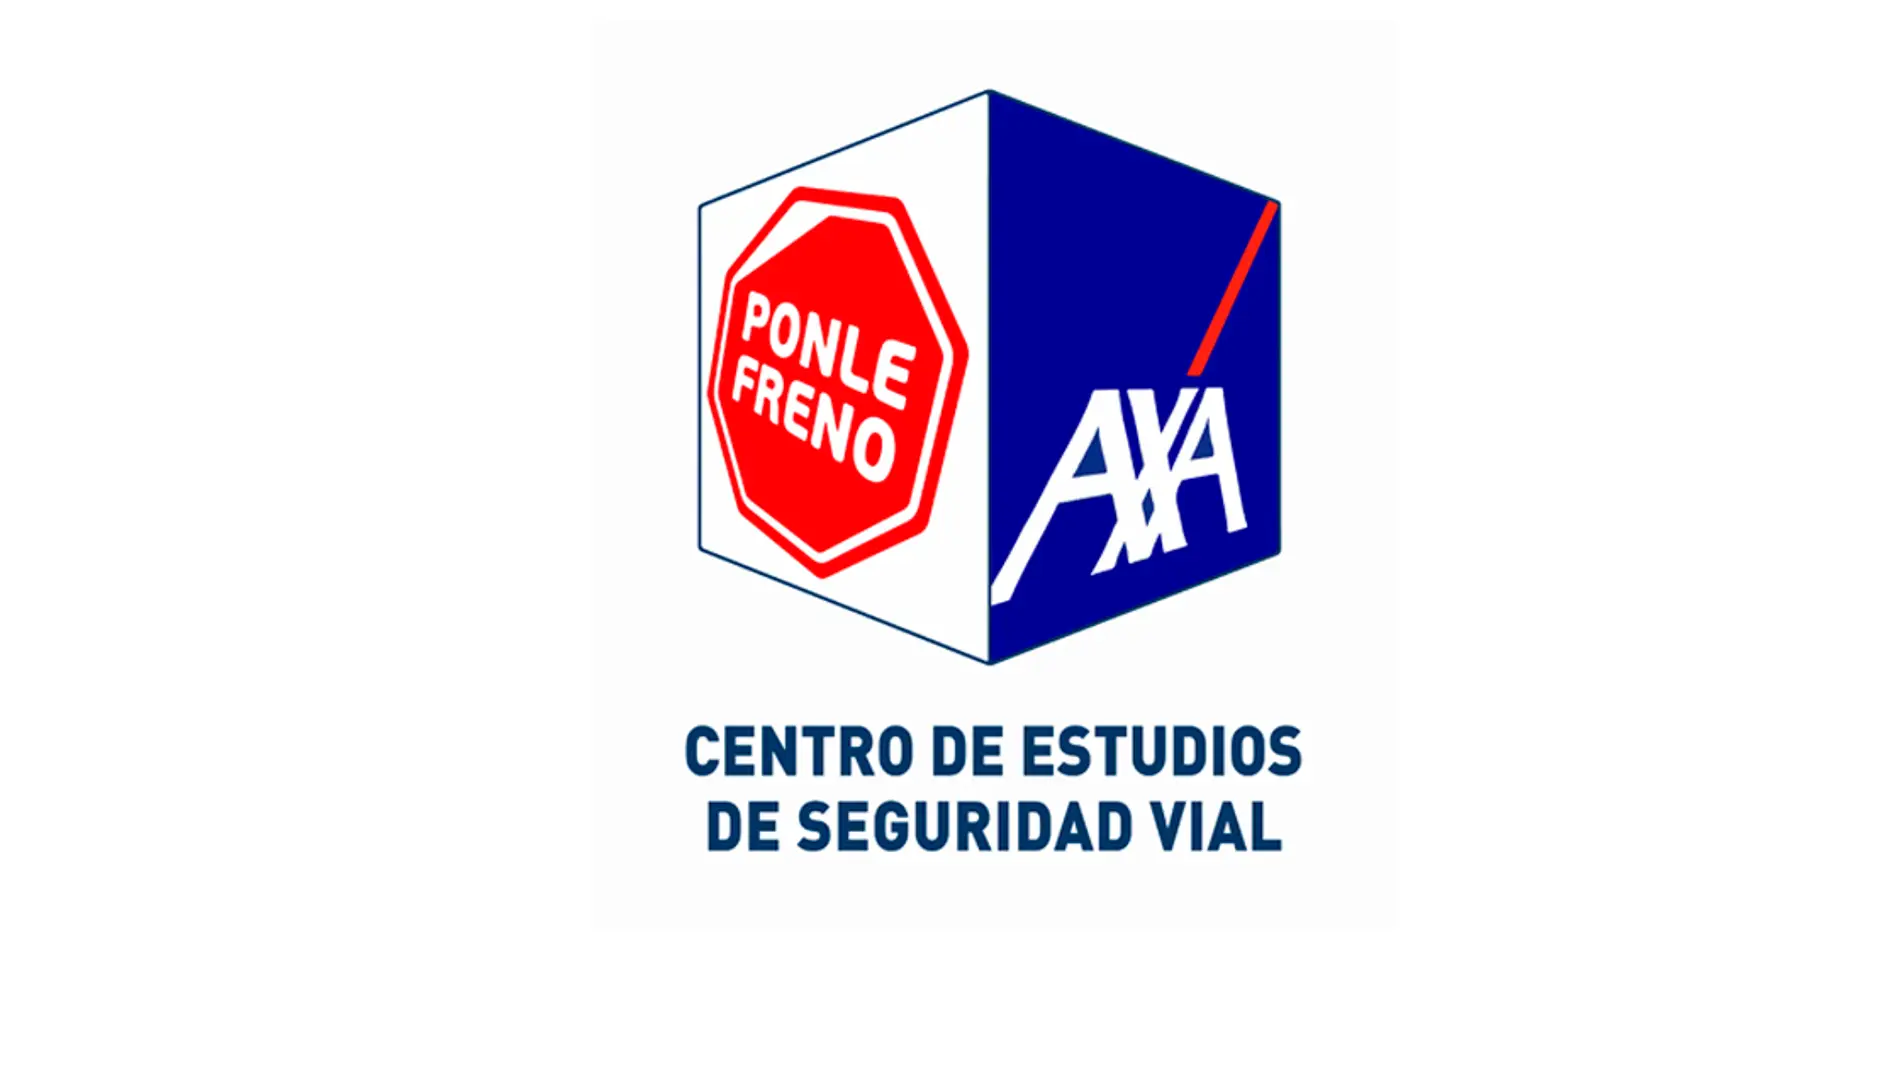 Logo del Centro de Estudios Ponle Freno-AXA